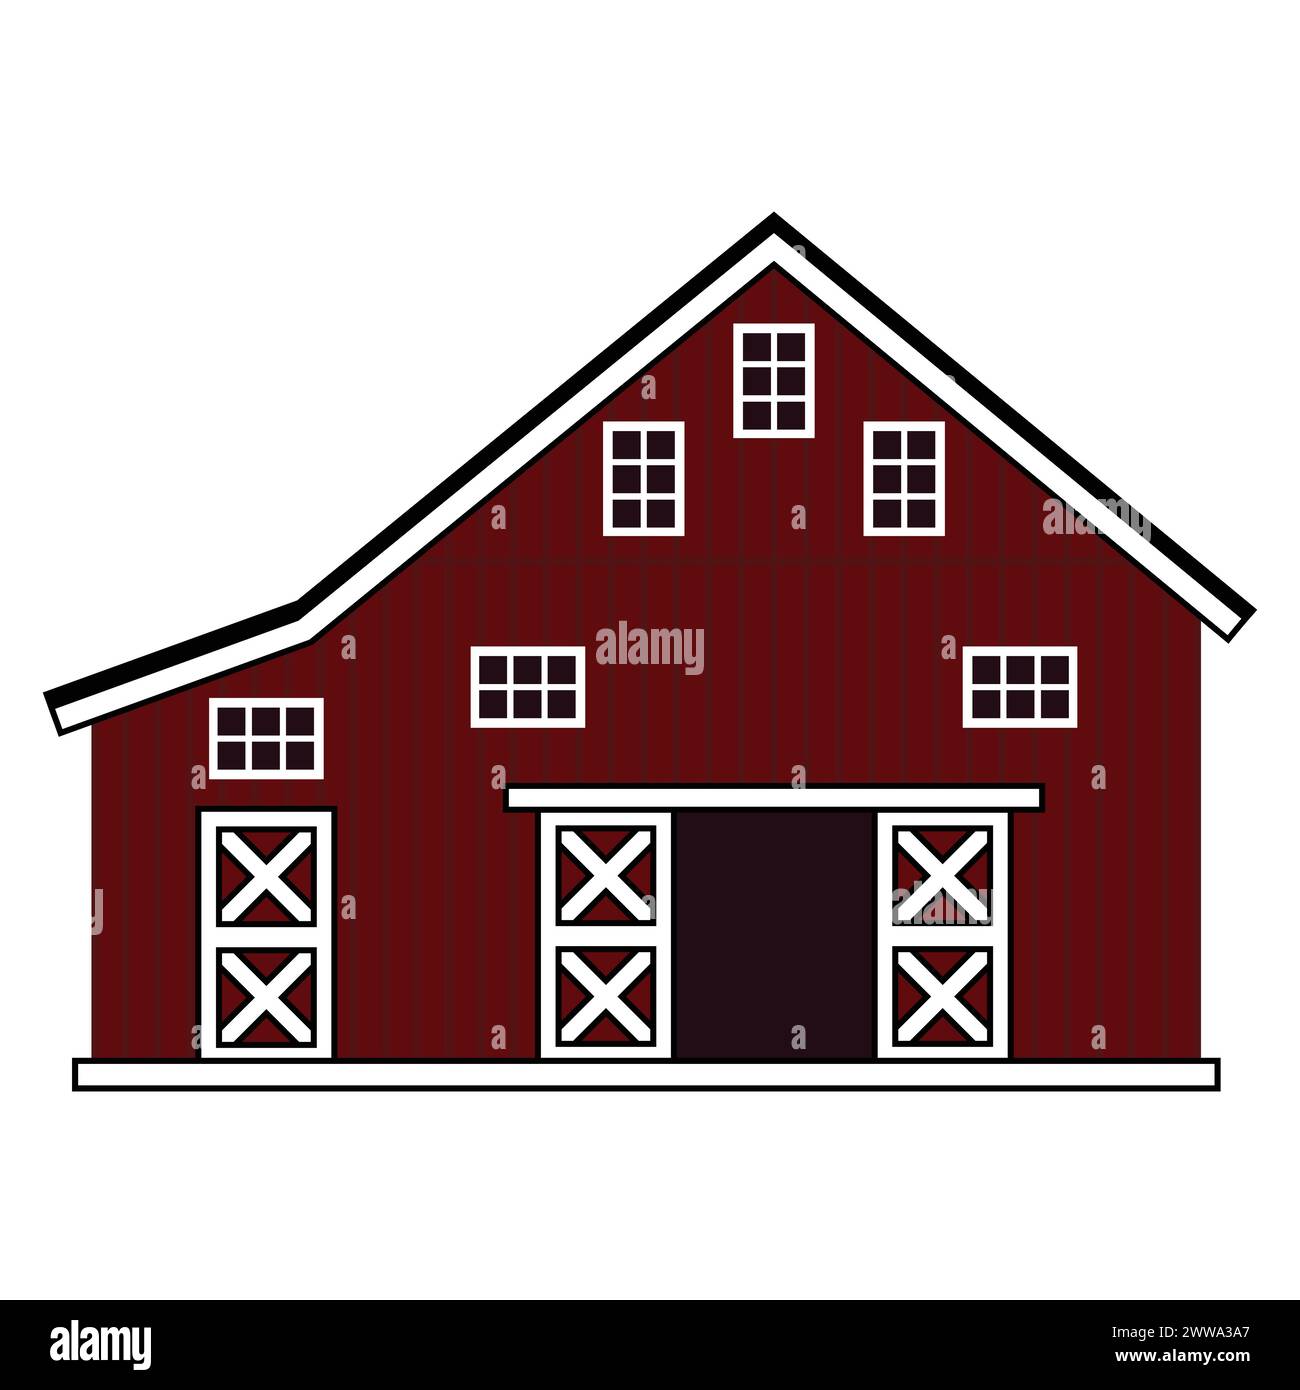 Vektor Holzscheune Haus Symbol. Isolierte Illustration von roten Kreuzbrettern Bauernhaus mit Tor und Dach auf weißem Hintergrund Stock Vektor